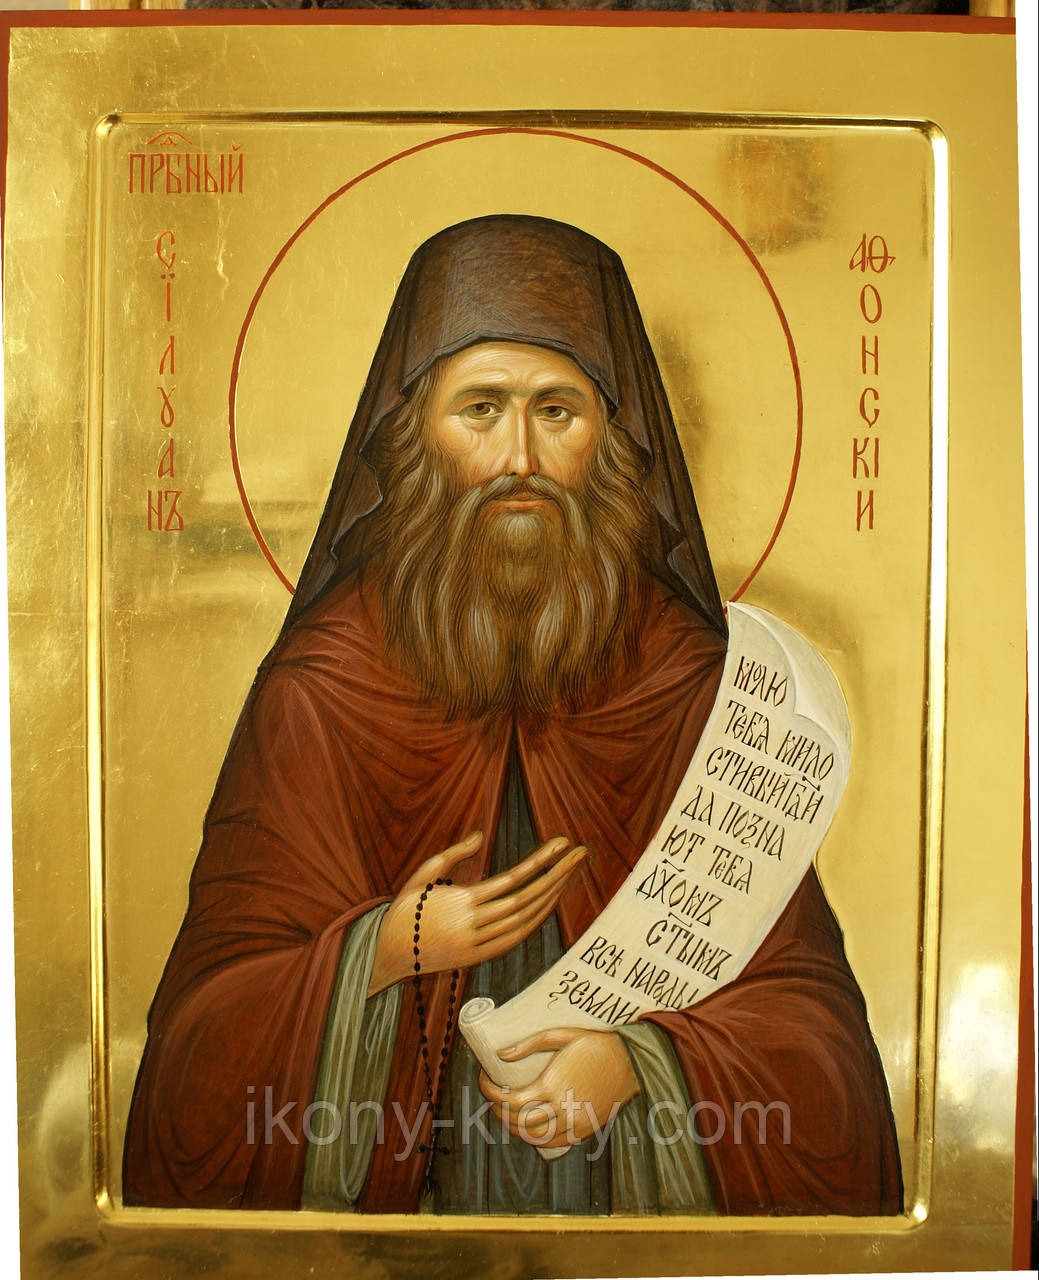 Ікона Святого преподобного Силуана Афонського.